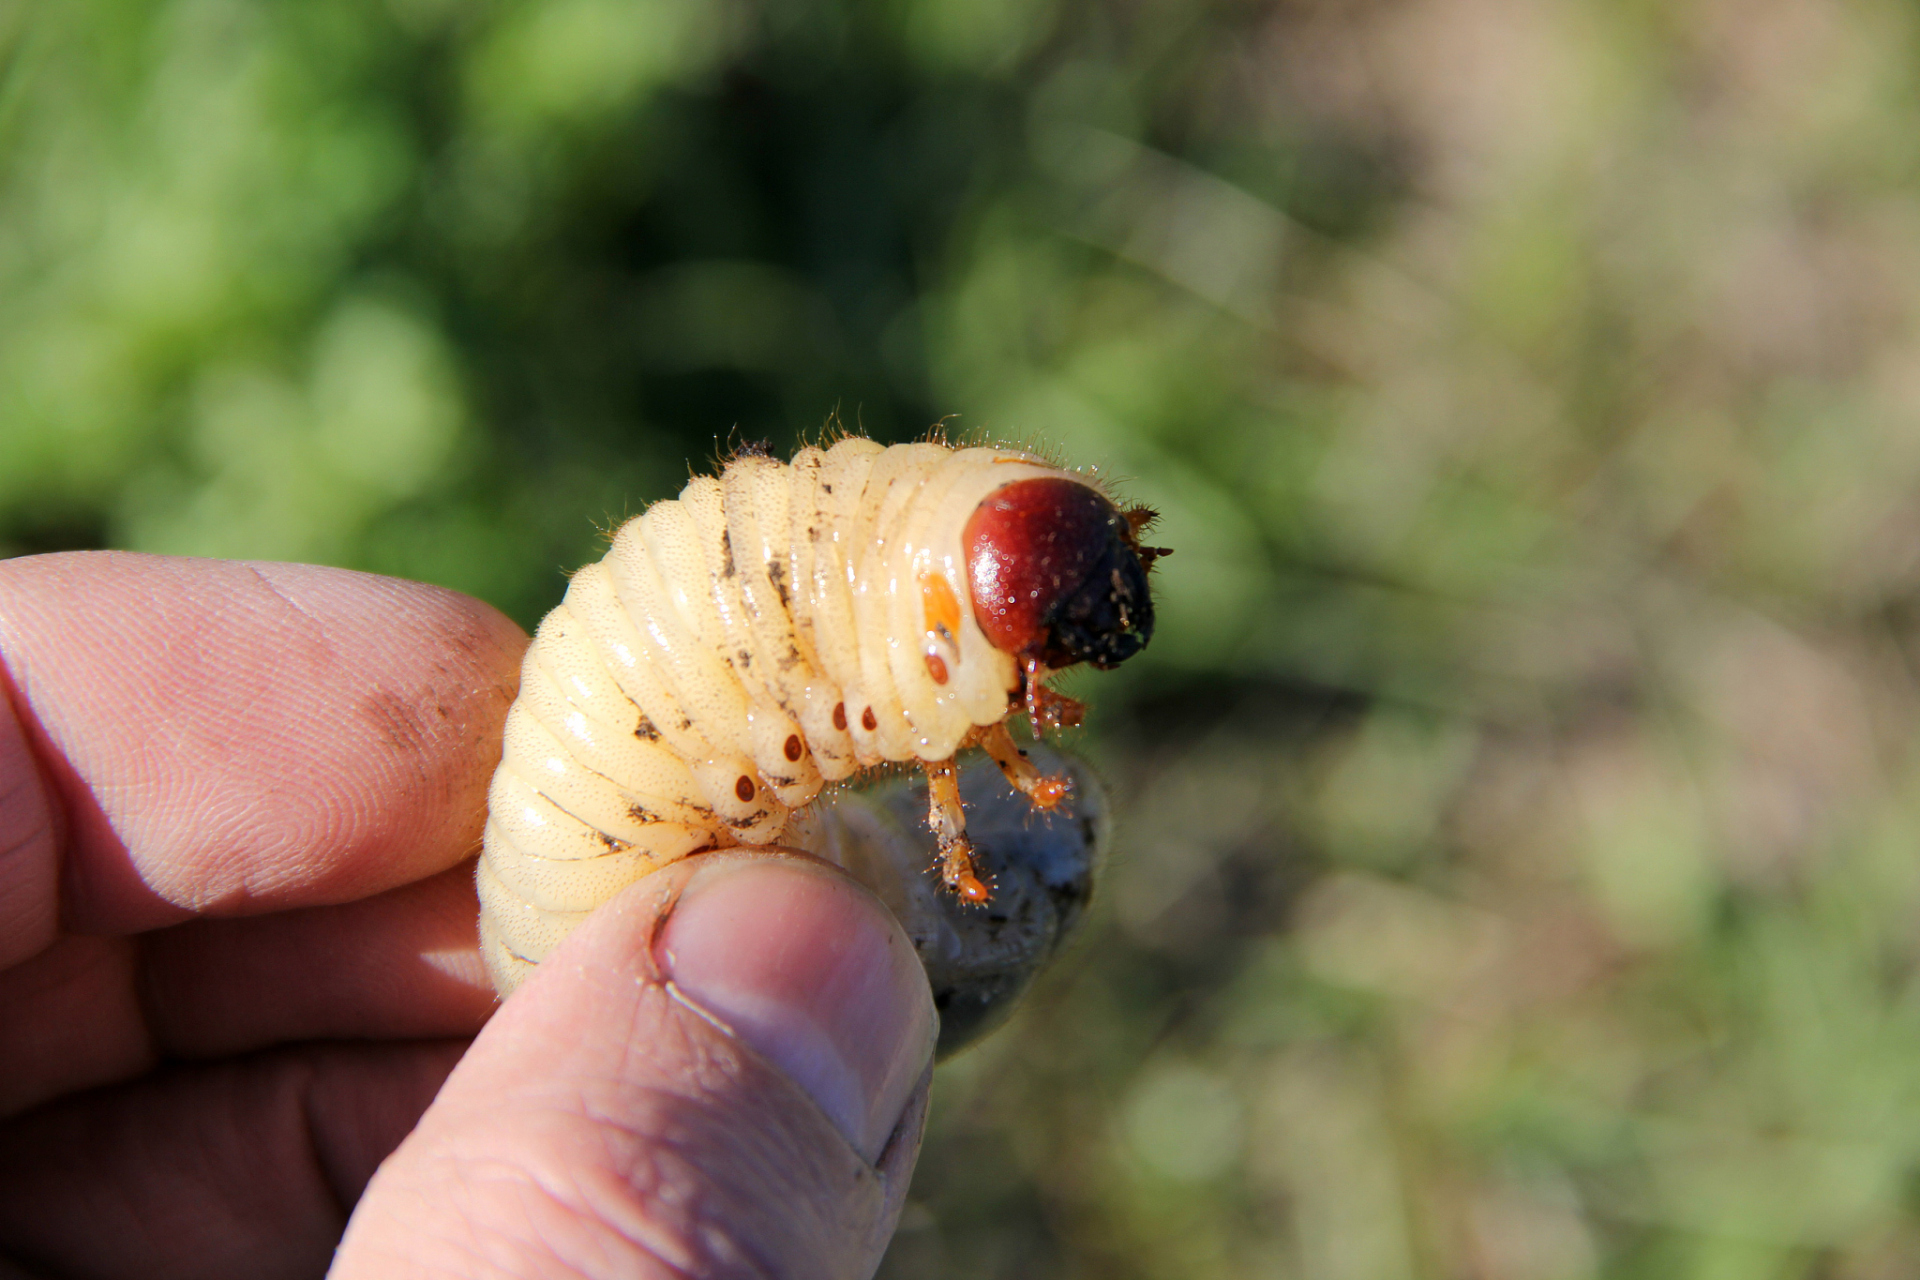 农村野生葛根虫是一种被誉为野生珍品的美食,其口感鲜美,营养丰富